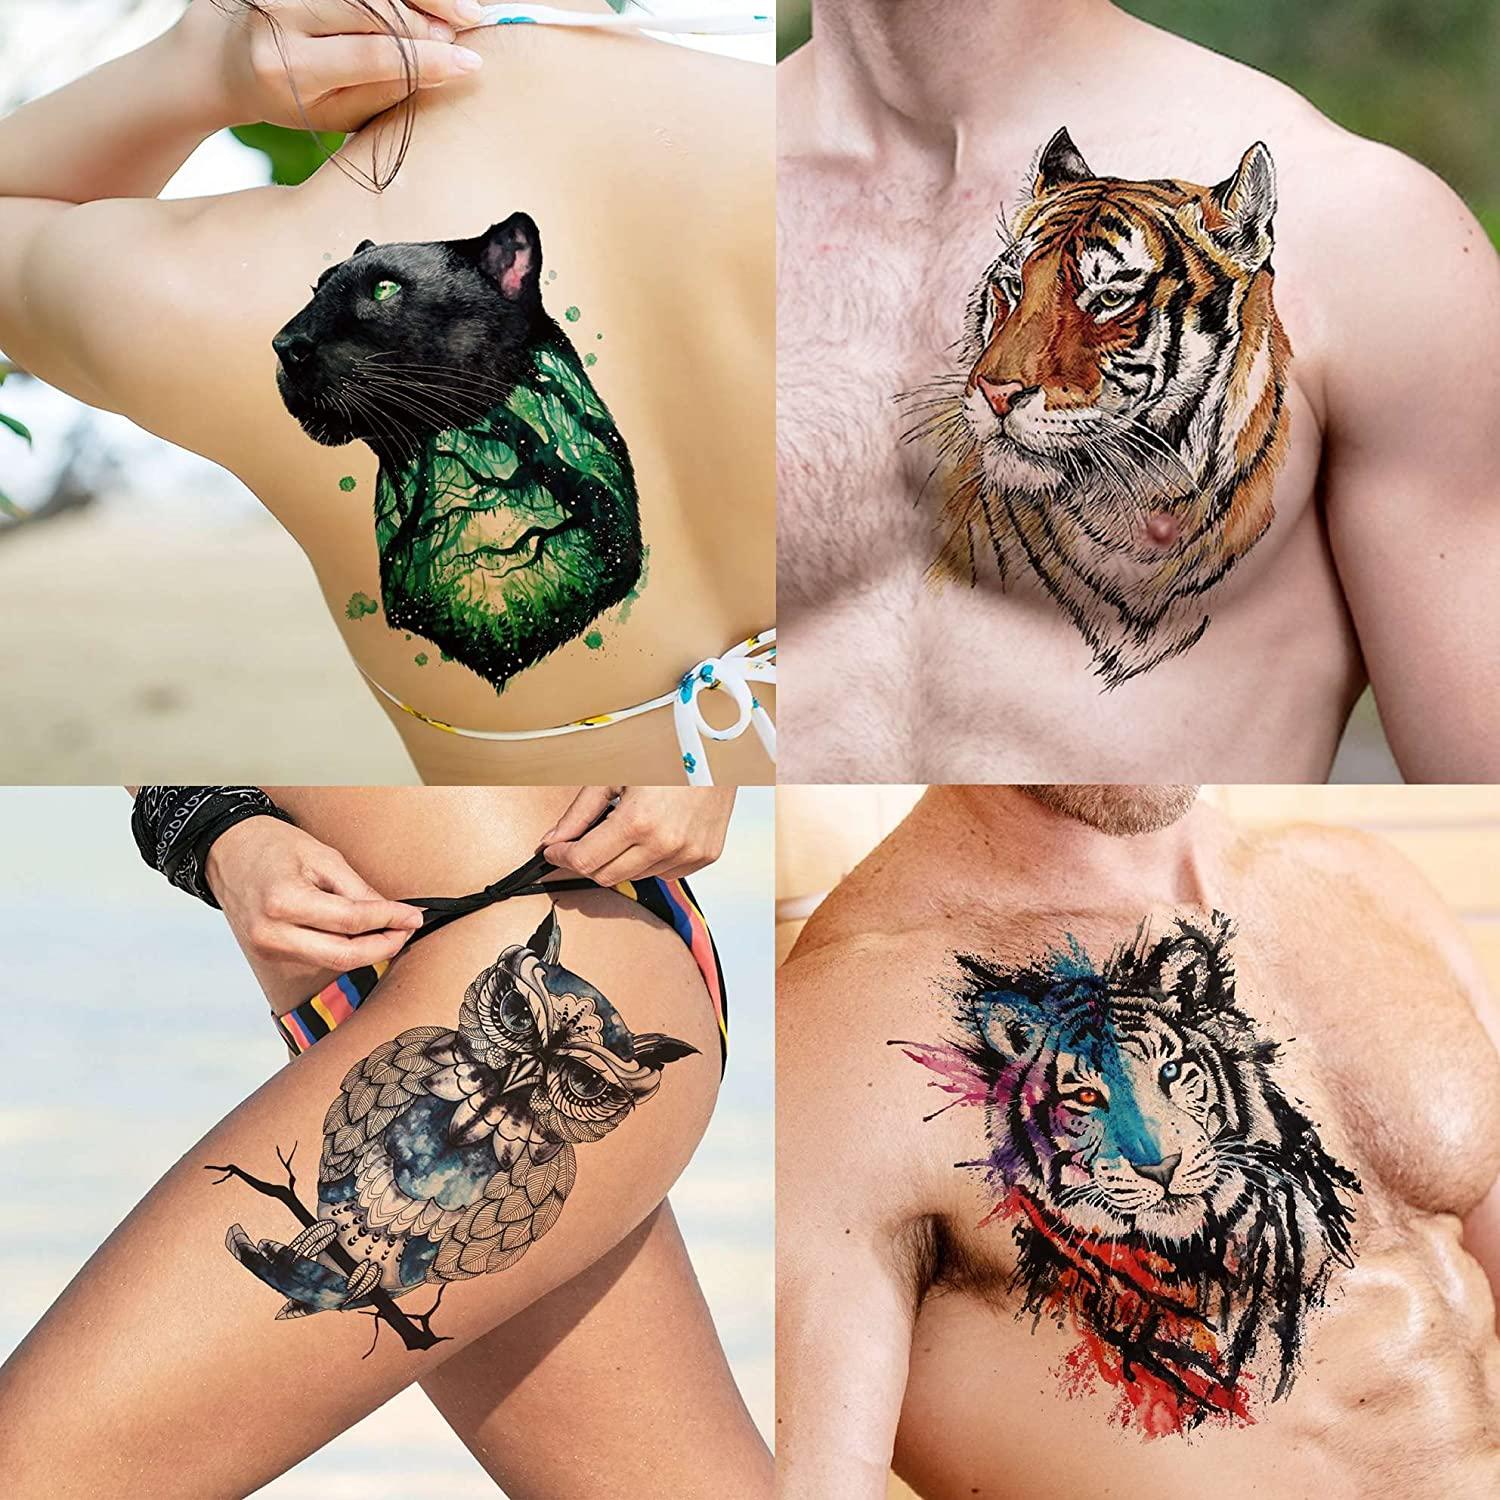 Tattoo uploaded by Ramon • #tattoos #art #ink #armtattoo #artist  #tattooartist #classicinksocialclub #tatt #infinitytattoo #watercolor  #hearts • Tattoodo